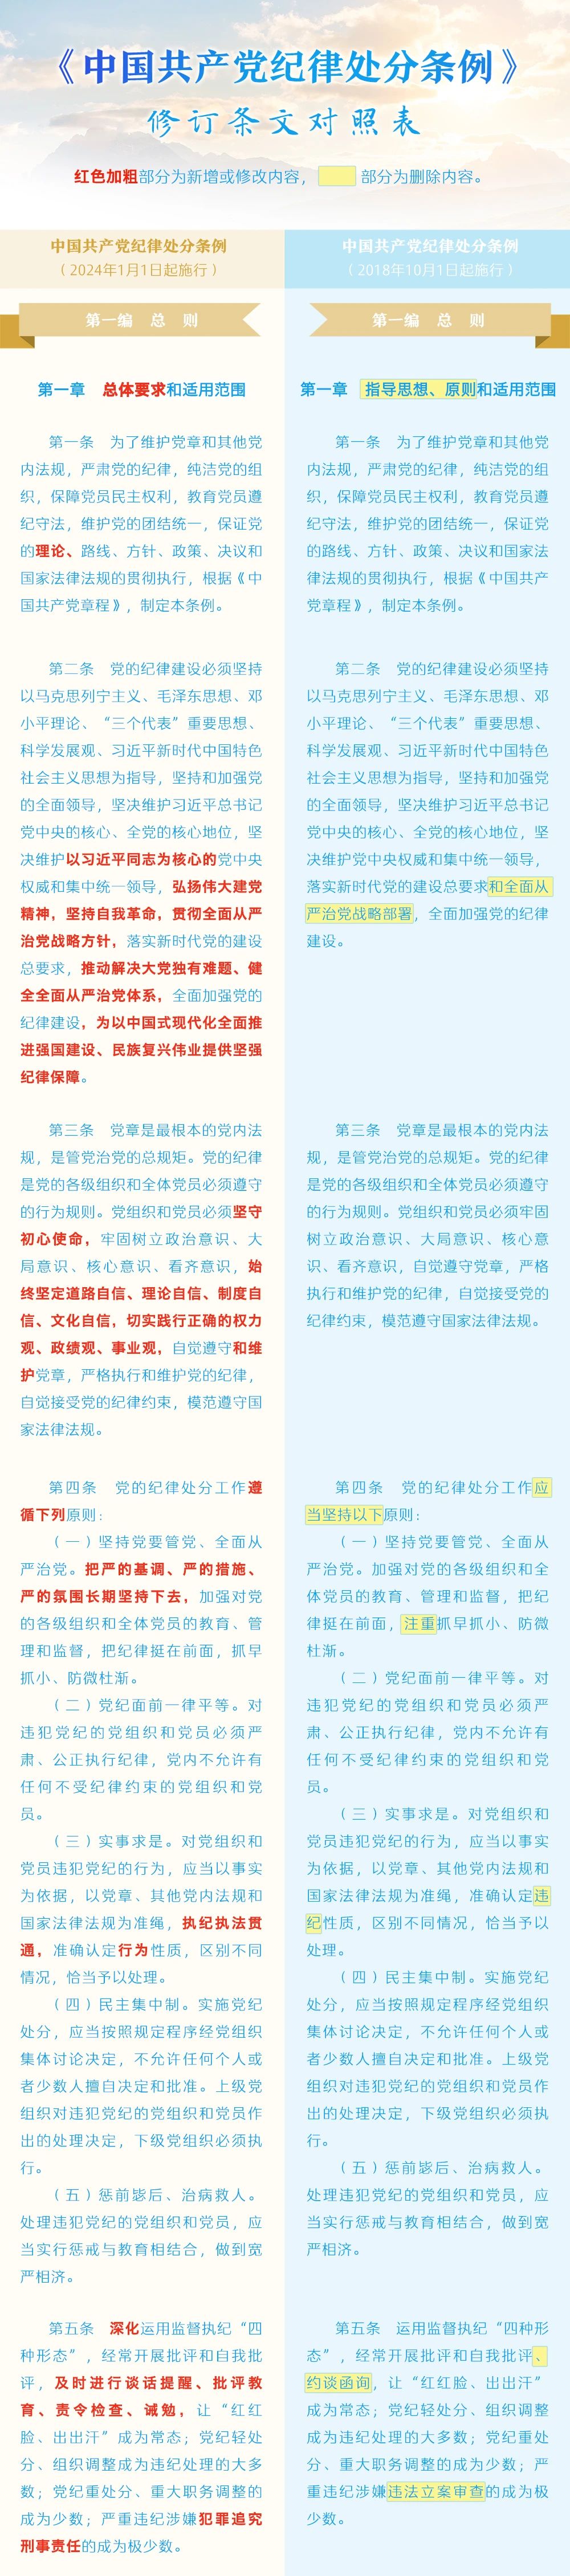 《中国共产党纪律处分条例》修订条文对照表1.jpg